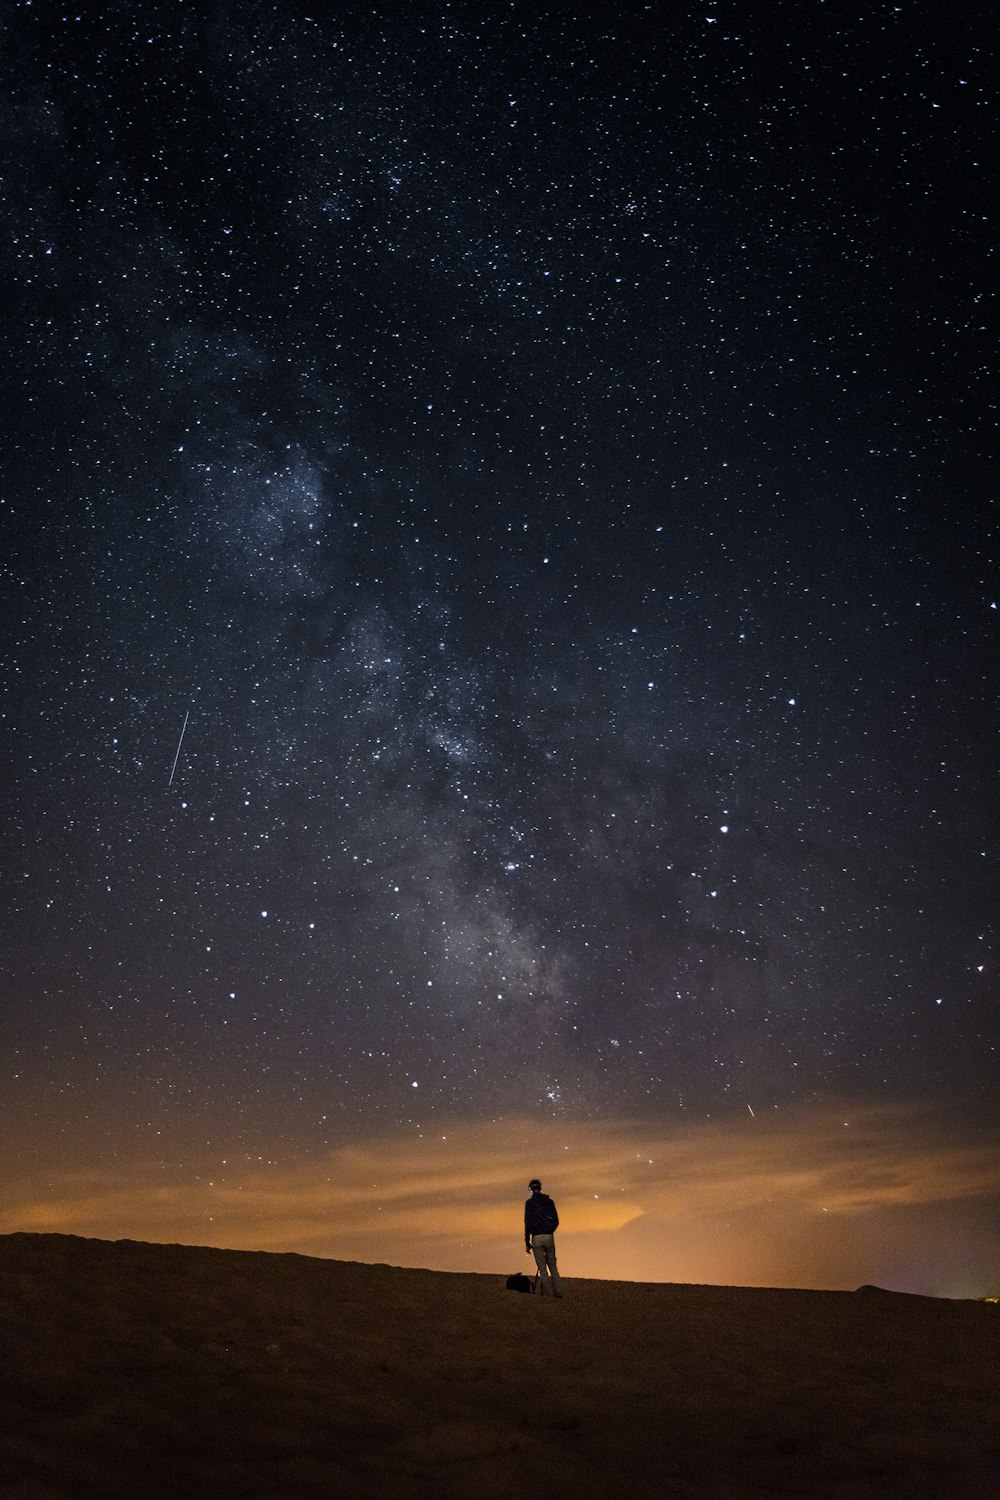 Nếu bạn là người yêu thích khám phá và tìm hiểu về vũ trụ, thì những bức ảnh bầu trời đêm là địa điểm không thể bỏ qua. Bạn sẽ được trải nghiệm yên tĩnh, tĩnh lặng và đắm chìm trong không gian bao la và u thẳm.